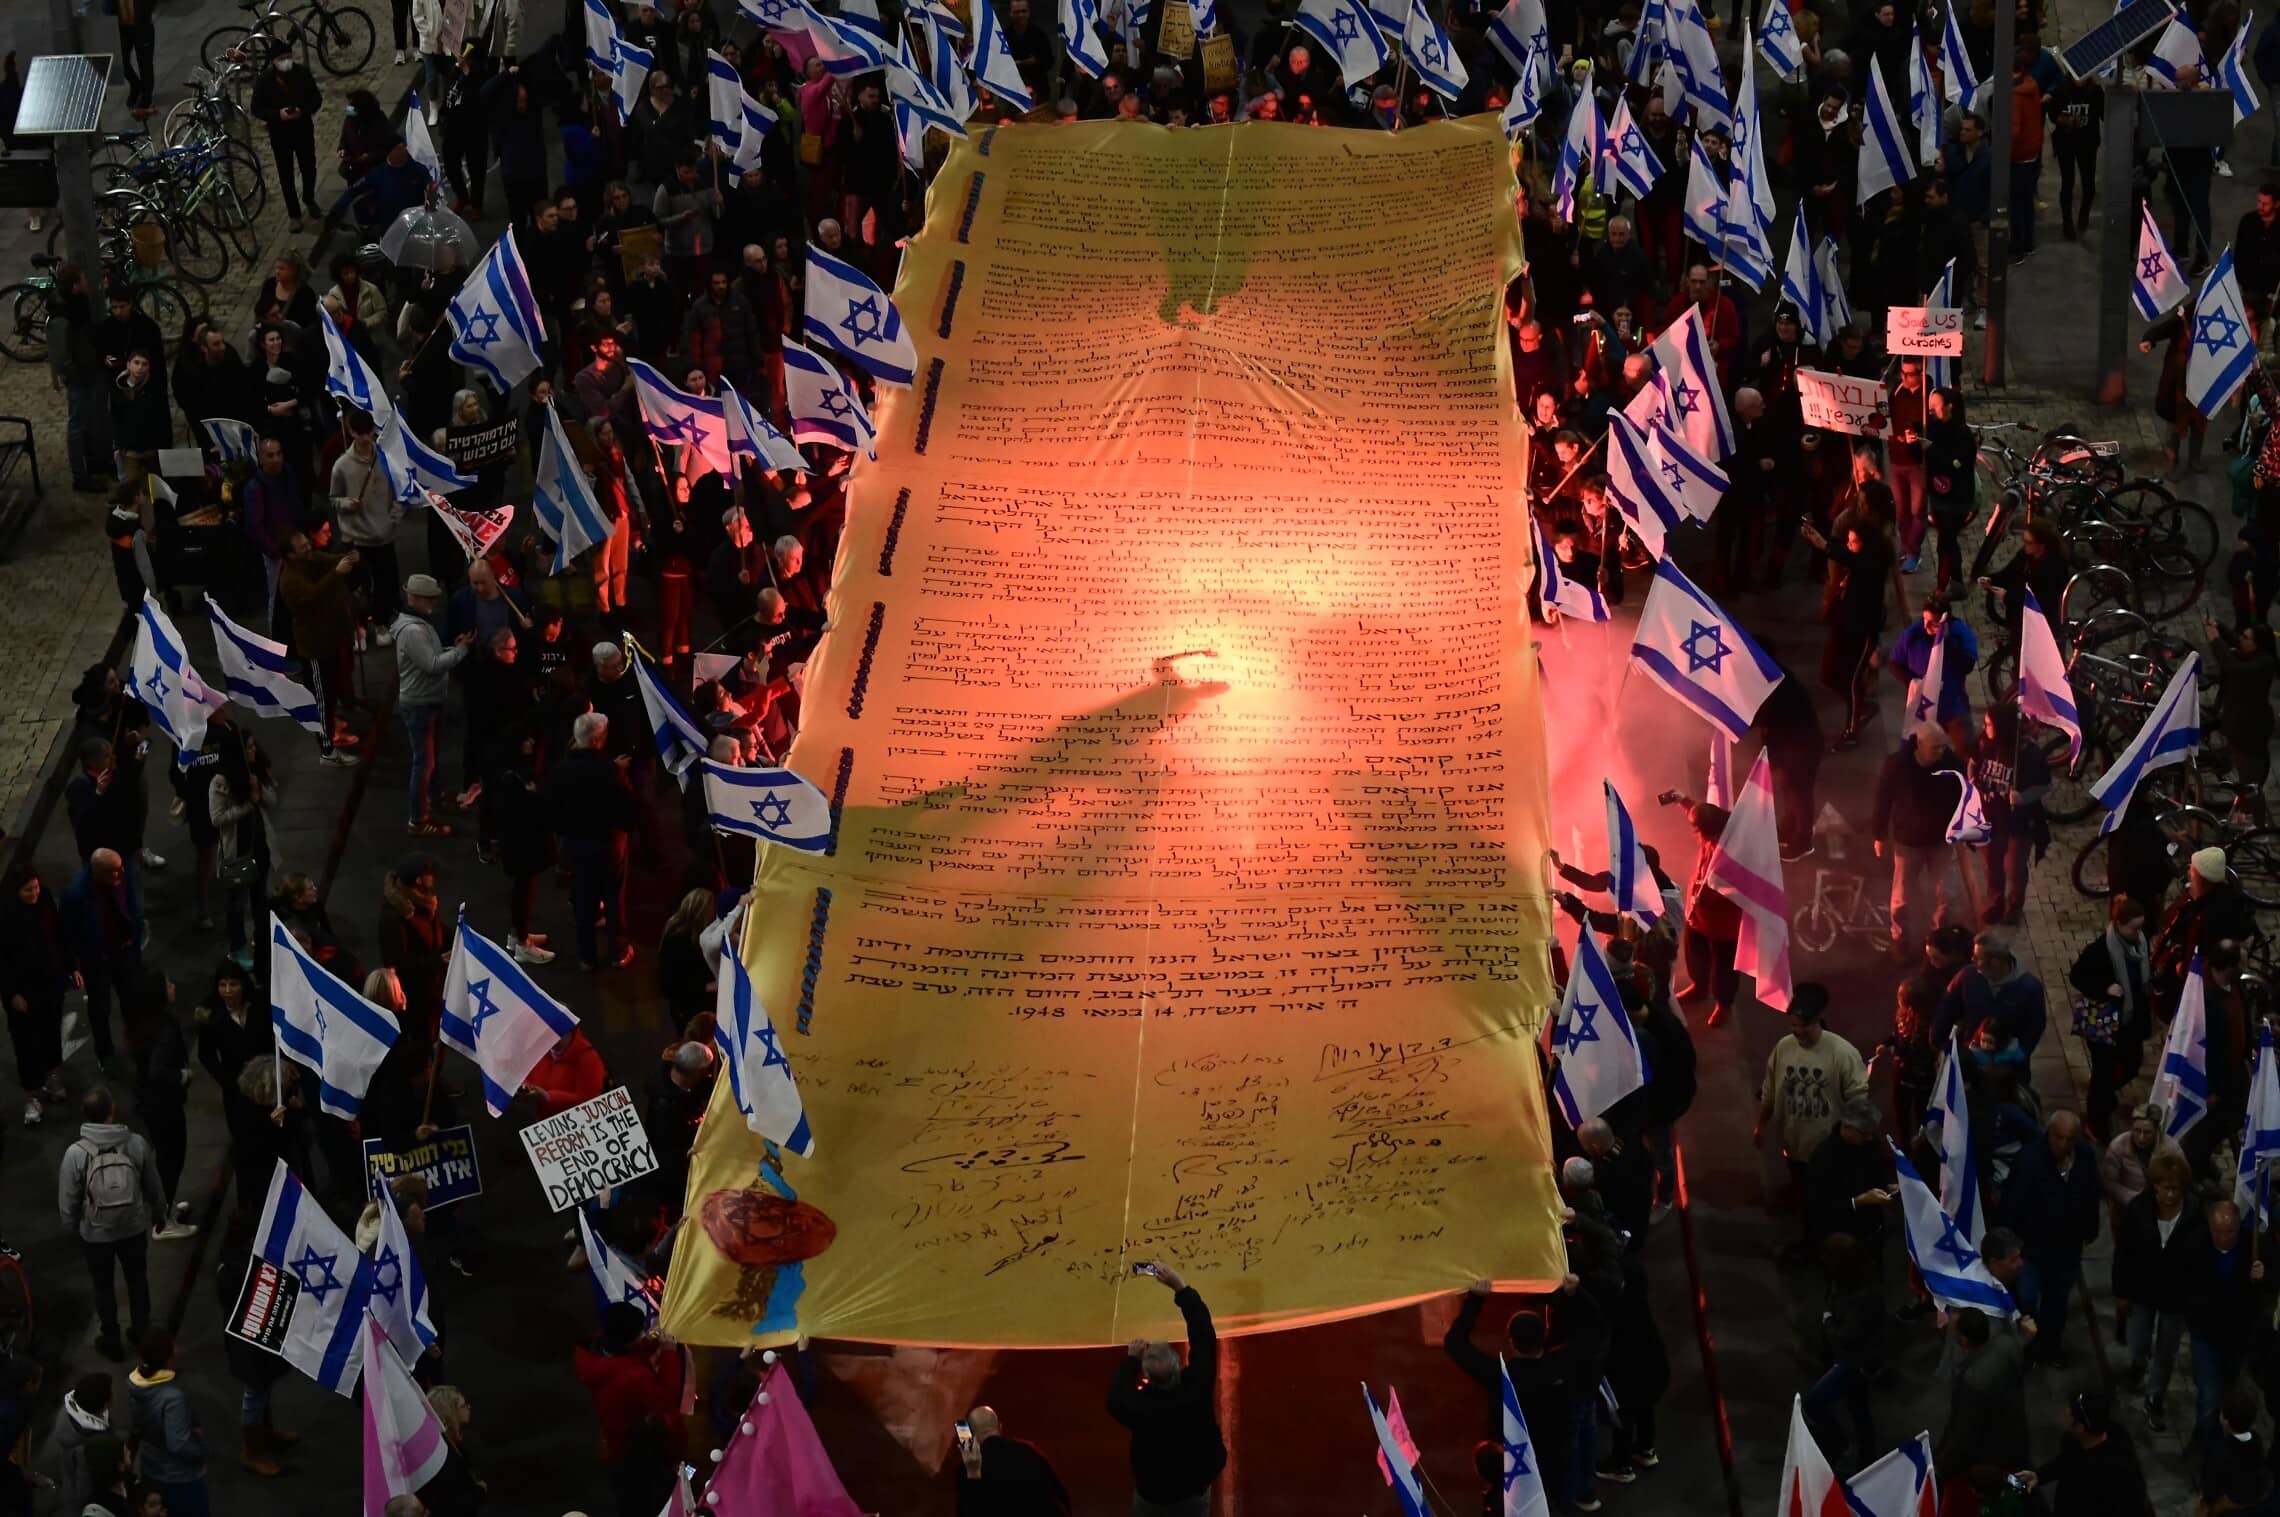 מפגינים בתל אביב נושאים דגם מוגדל של מגילת העצמאות במחאה נגד המהפכה המשפטית, 18 בפברואר 2023 (צילום: תומר נויברג, פלאש 90)